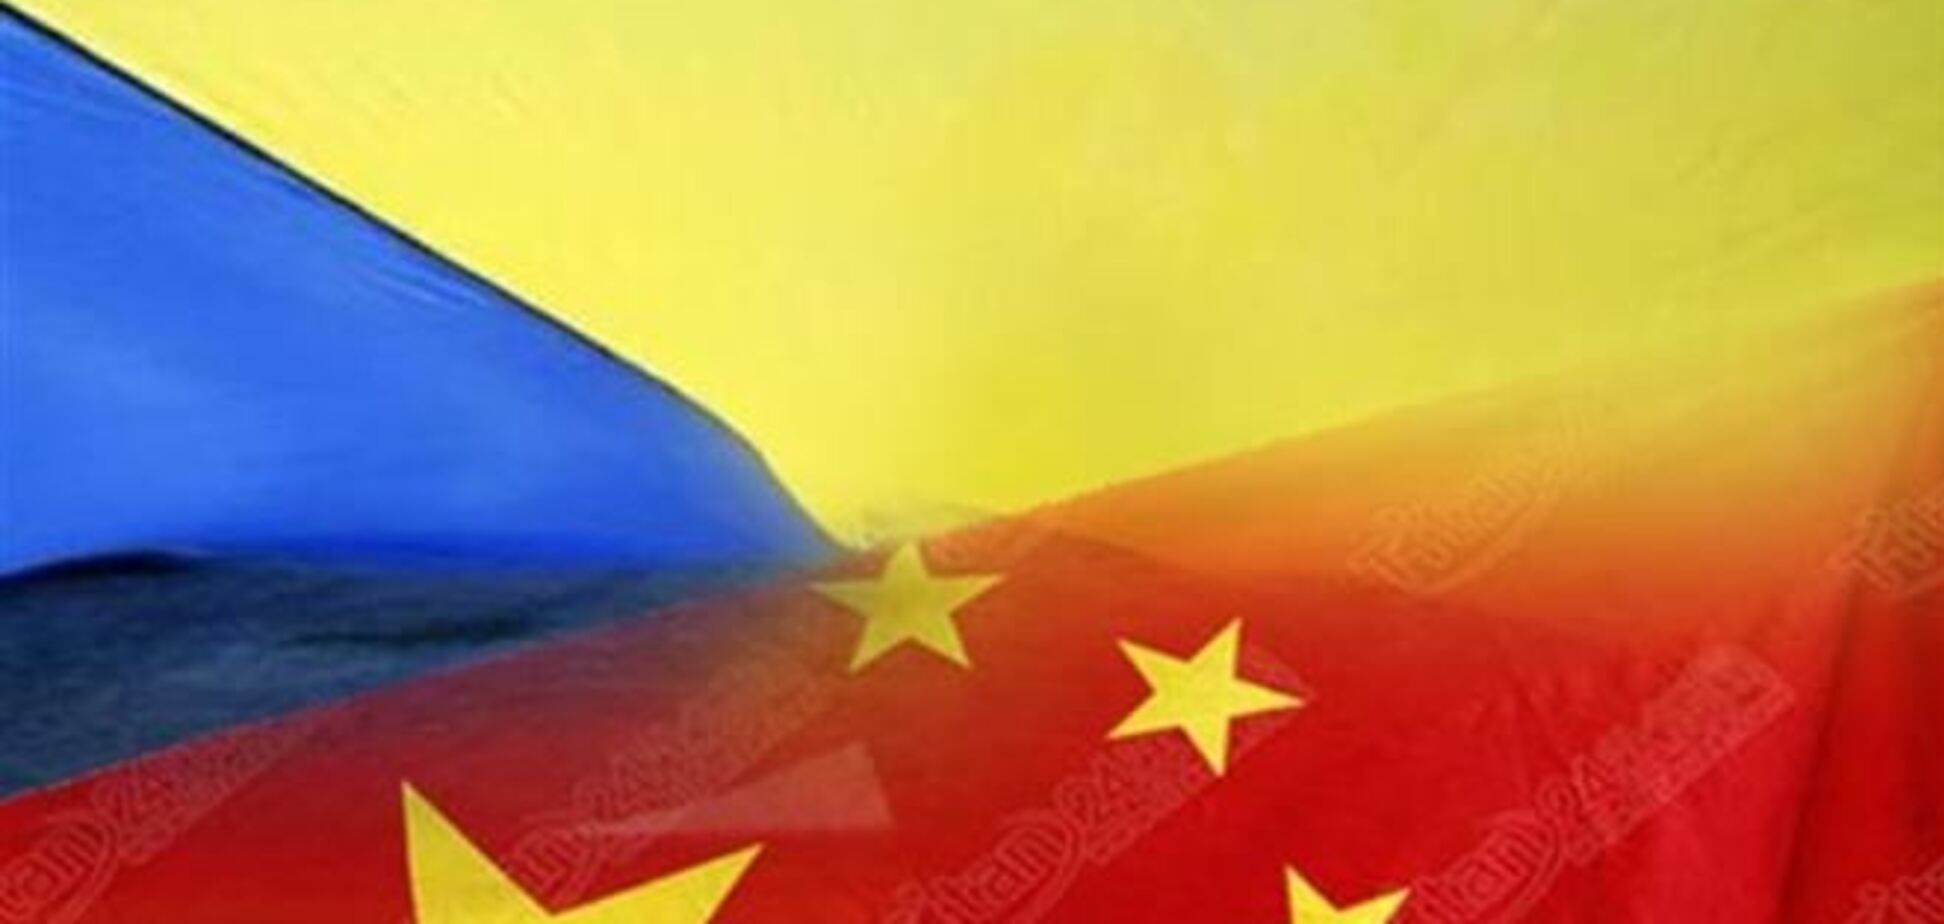 Экономическое сотрудничество между Украиной и Китаем не зависит от подписания ассоциации, - посол КНР